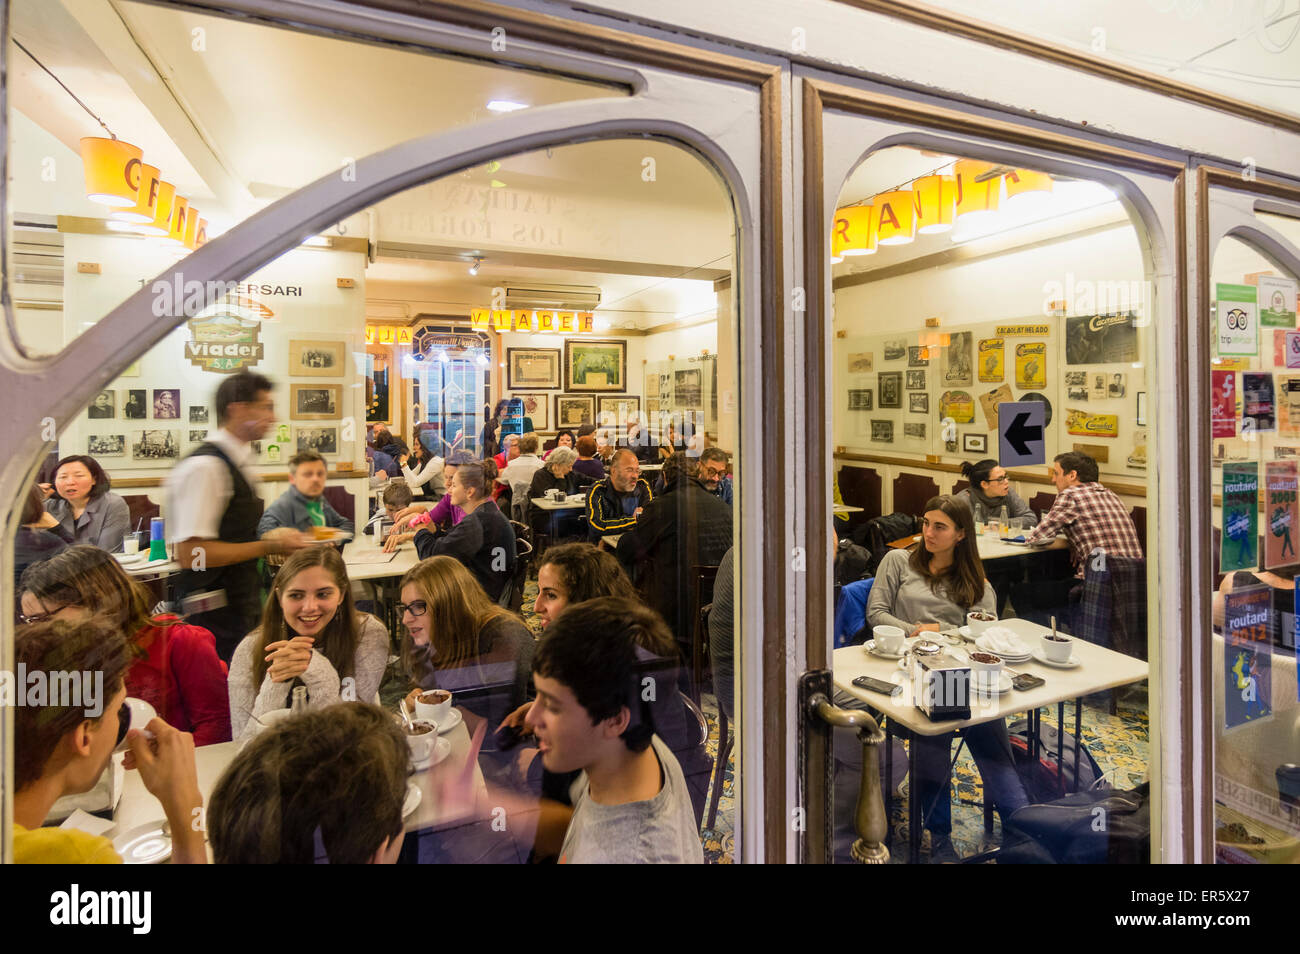 La Granja Viader, Milk Bar, Cafe, Raval, Barcelona, Spain Stock Photo